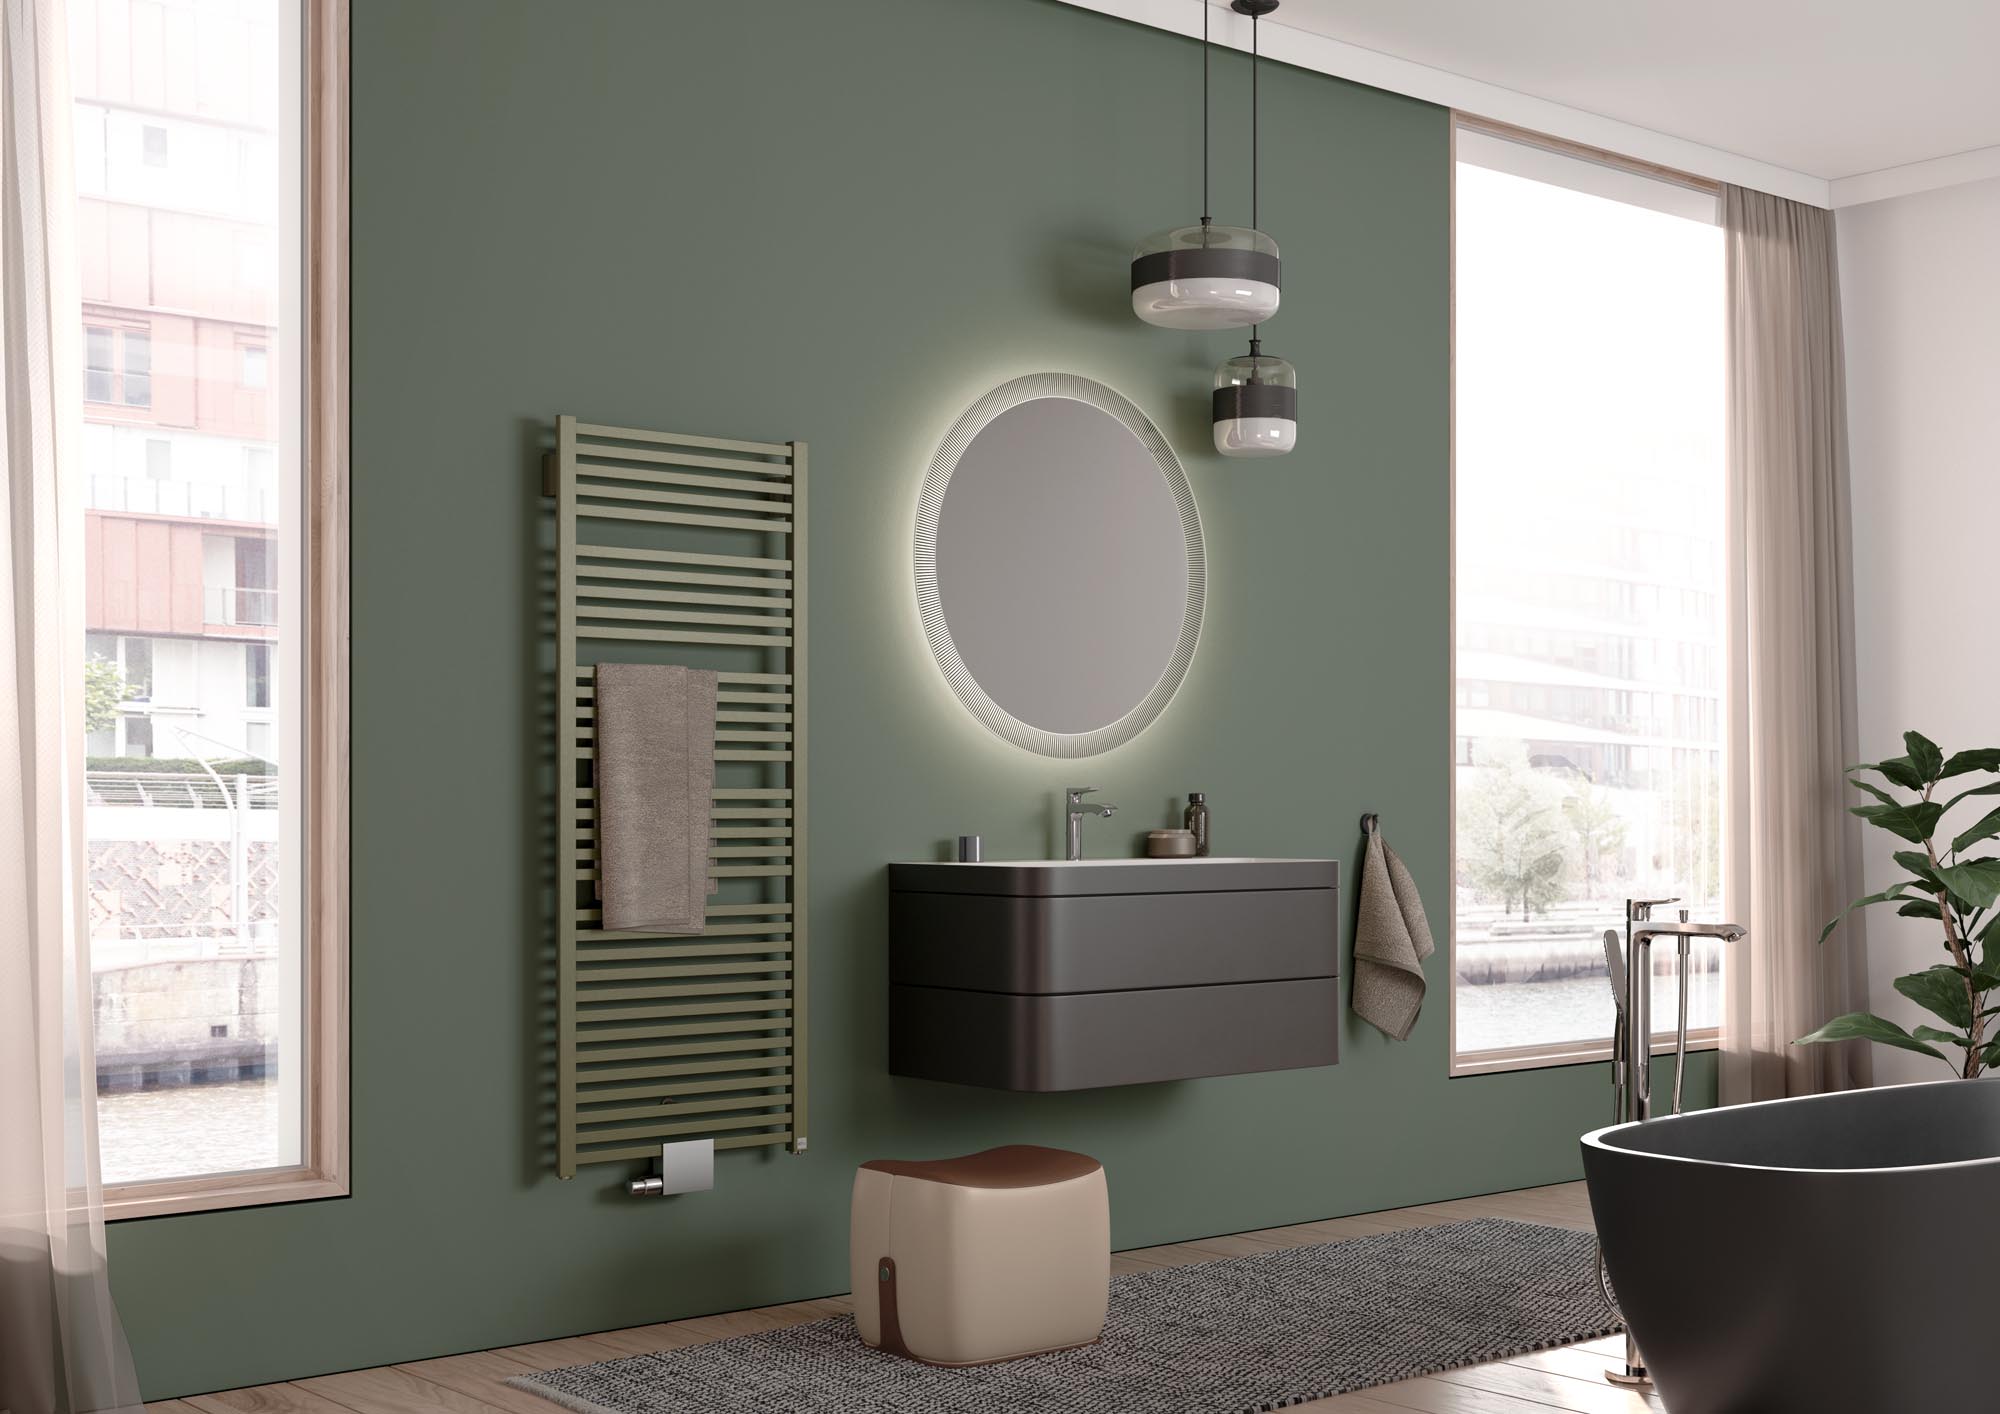 Radiateur design et de salle de bain Geneo quadris de Kermi – Une forme surprenante, un aspect convaincant.